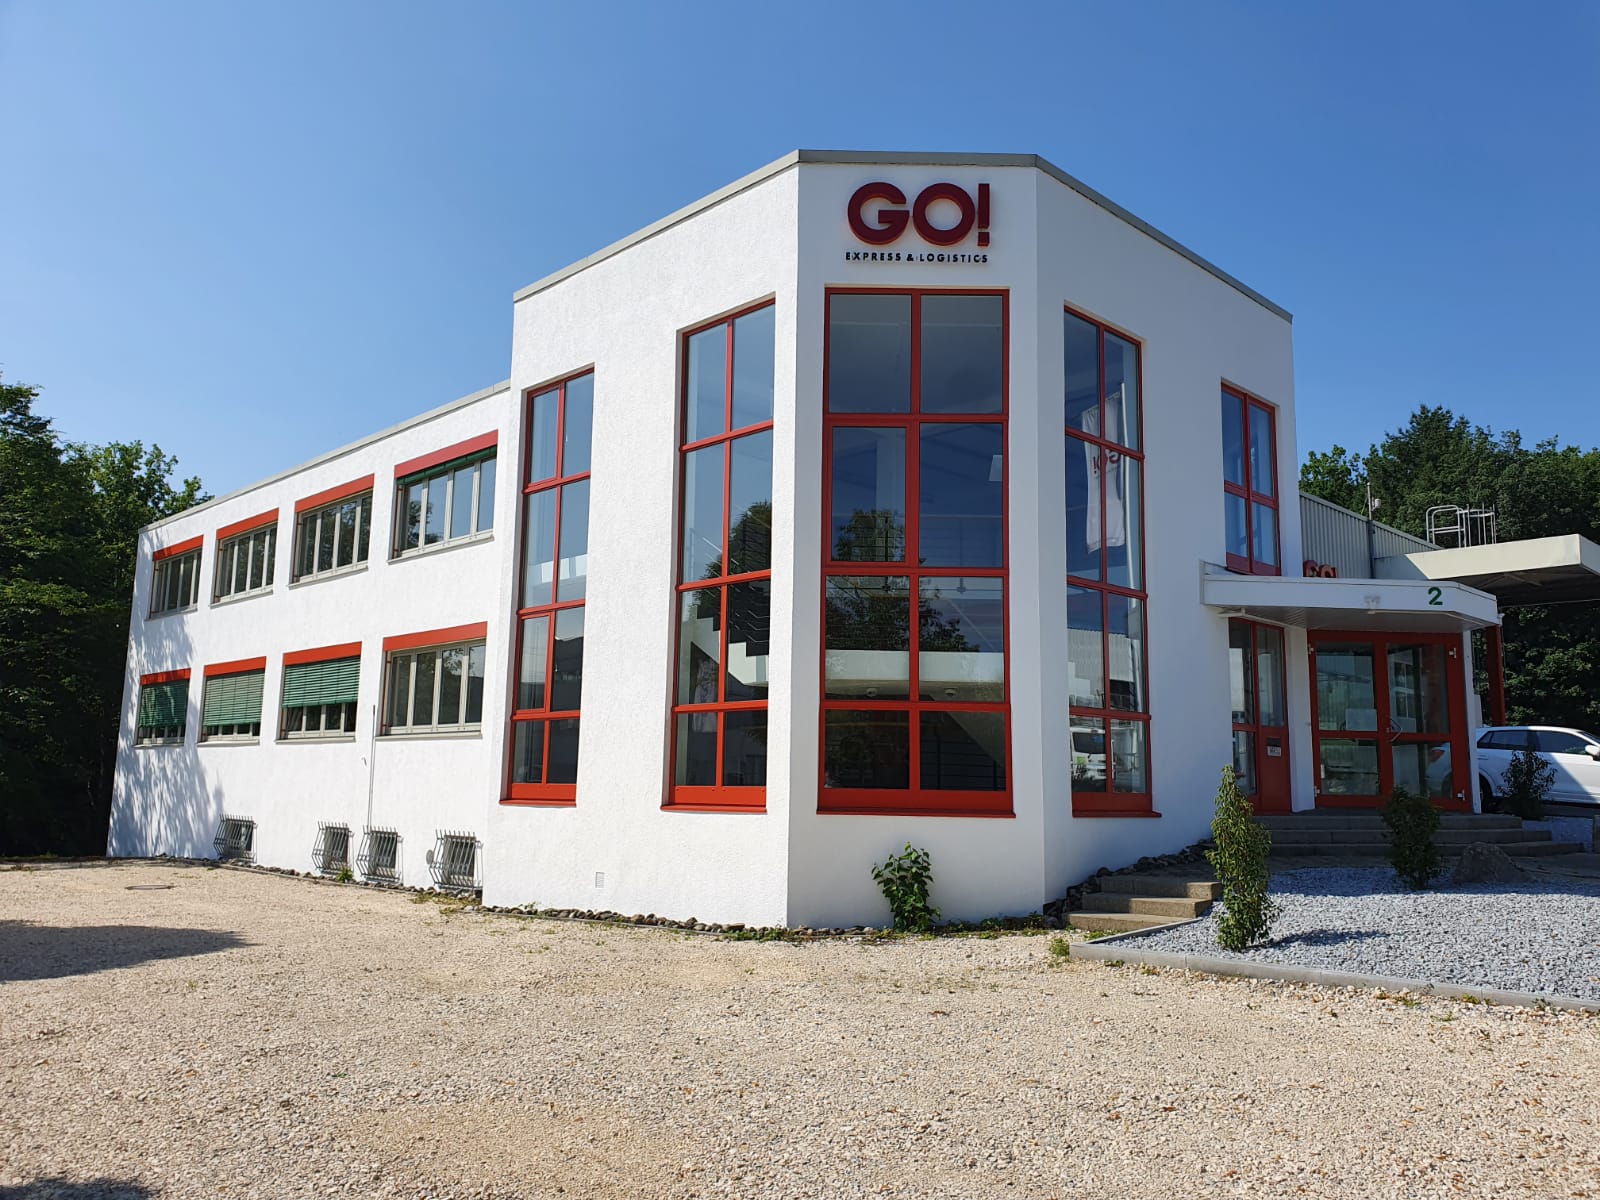 Kundenbild groß 2 GO! Express & Logistics Südwest GmbH & Co. KG, Zweigniederlassung Tübingen